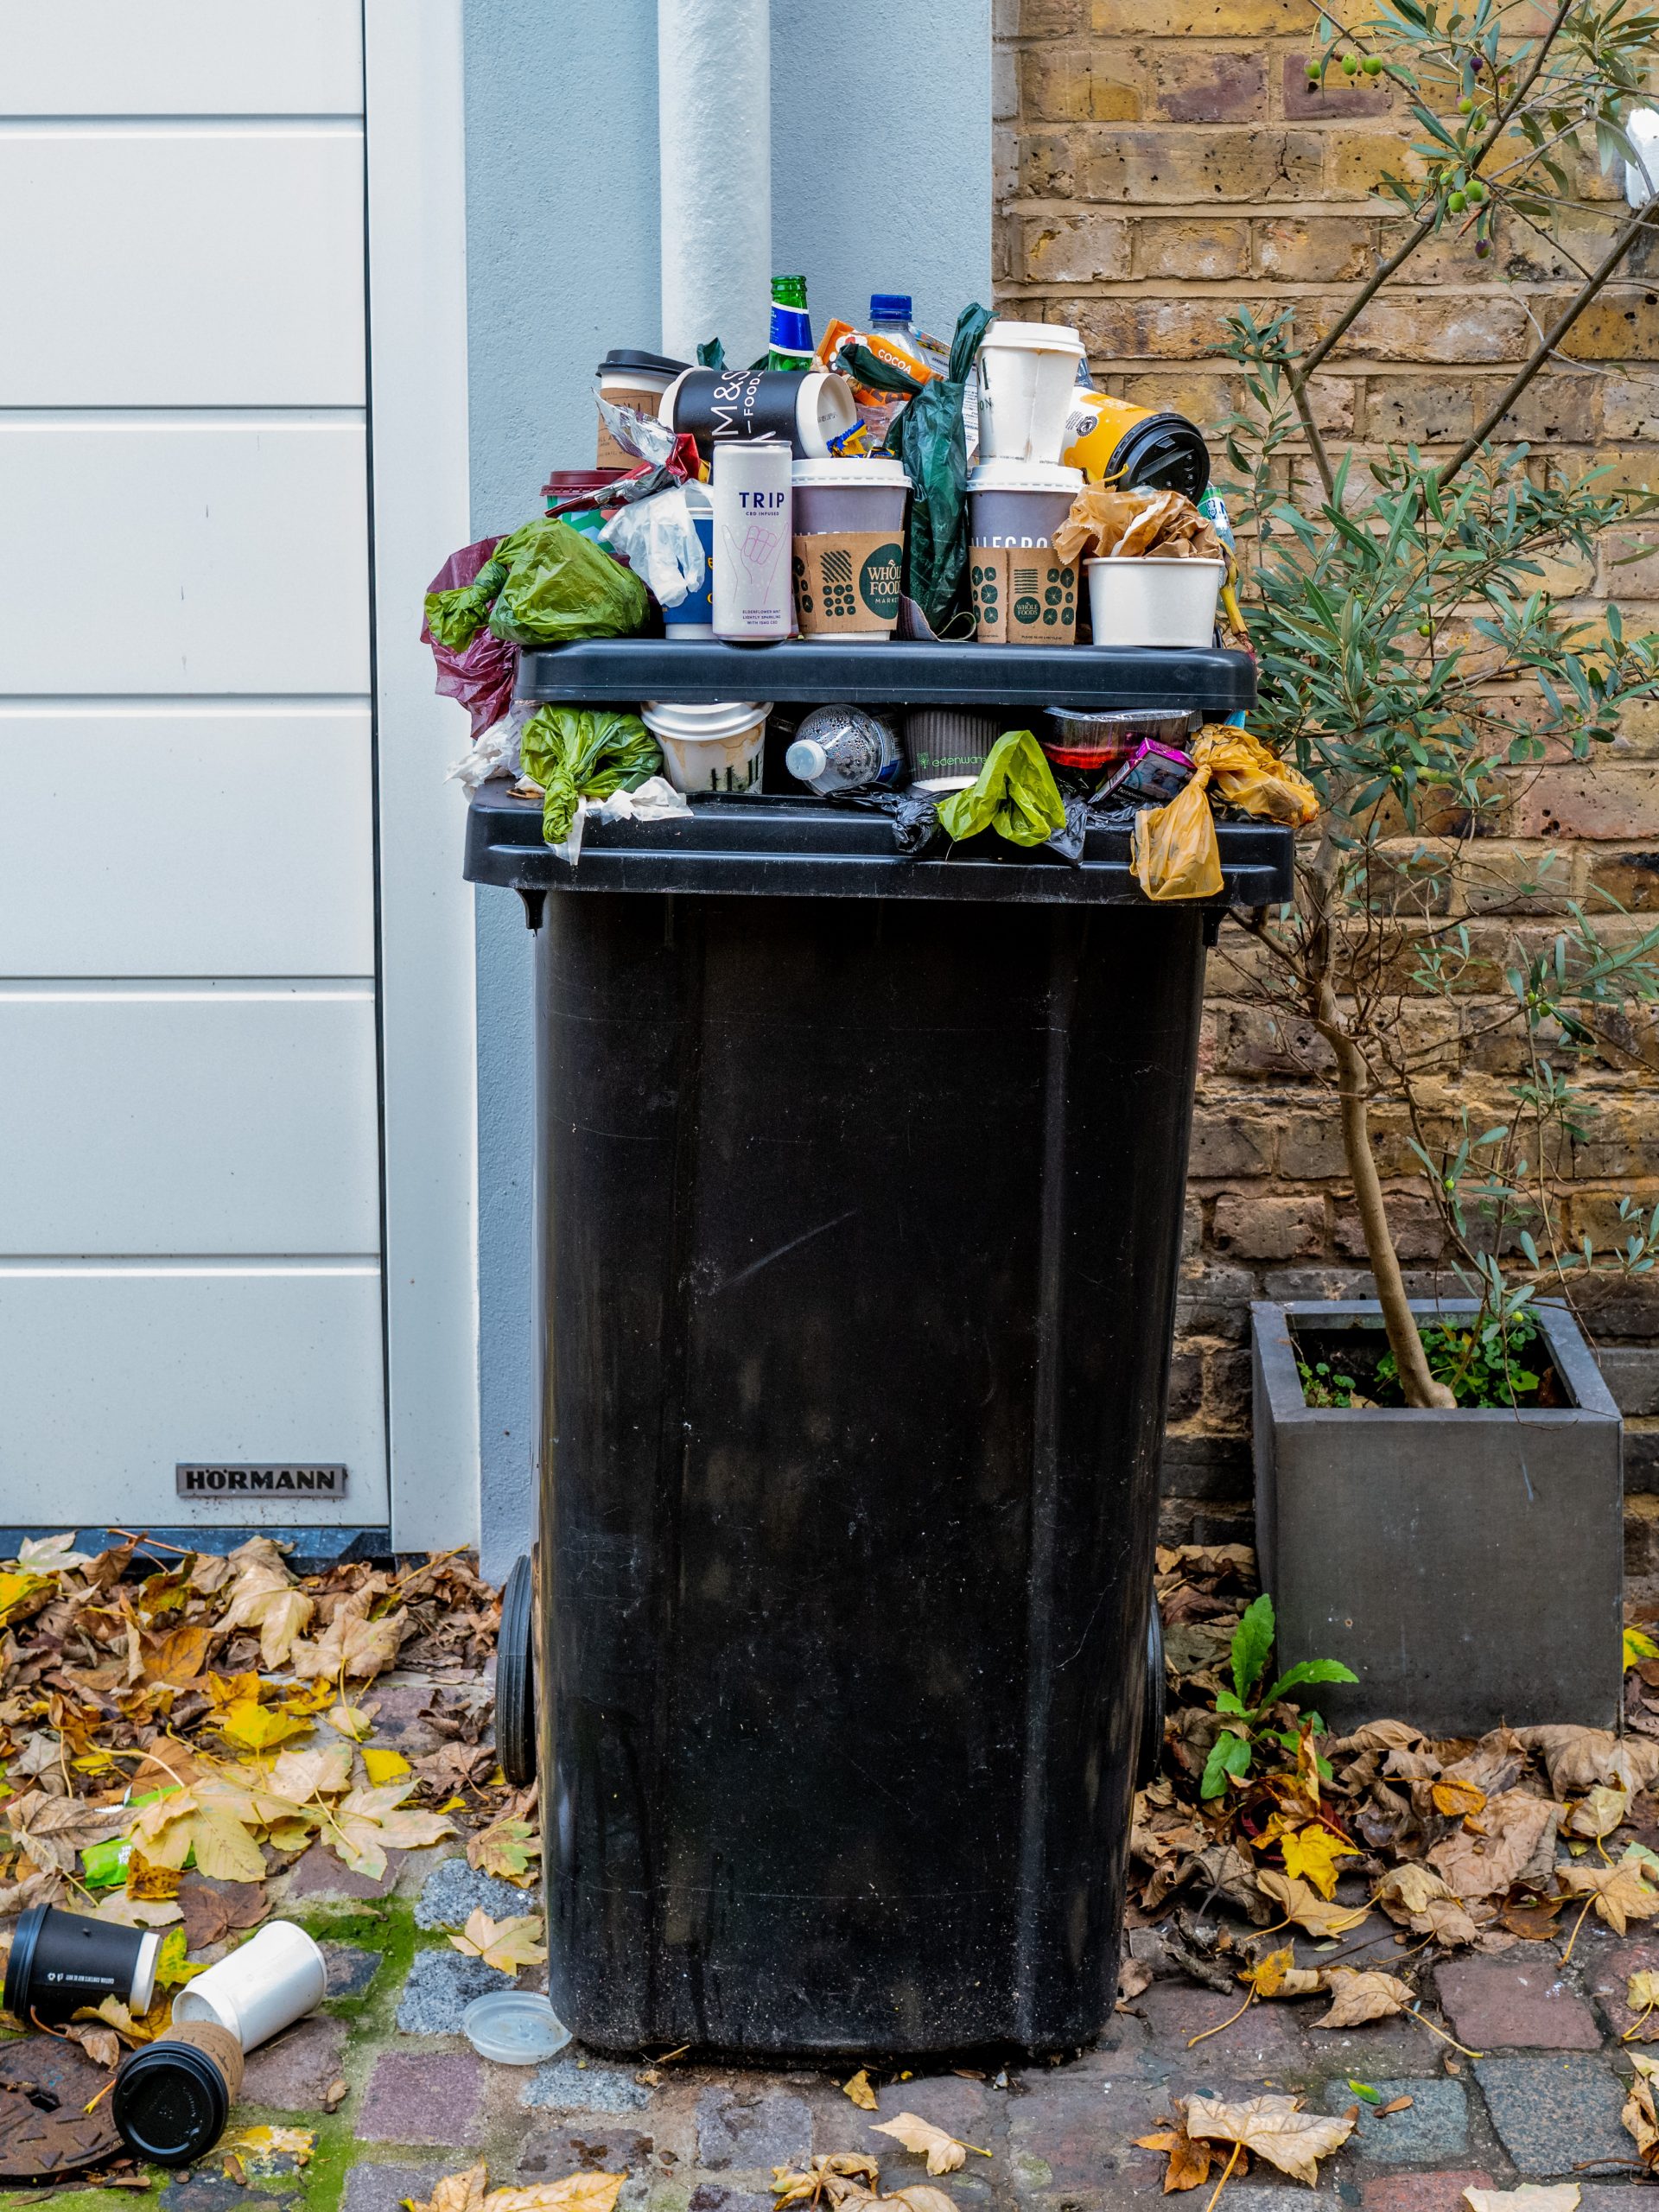  Cara mengurangi sampah rumah tangga: berikut adalah beberapa ide yang bisa dipraktikkan sekarang